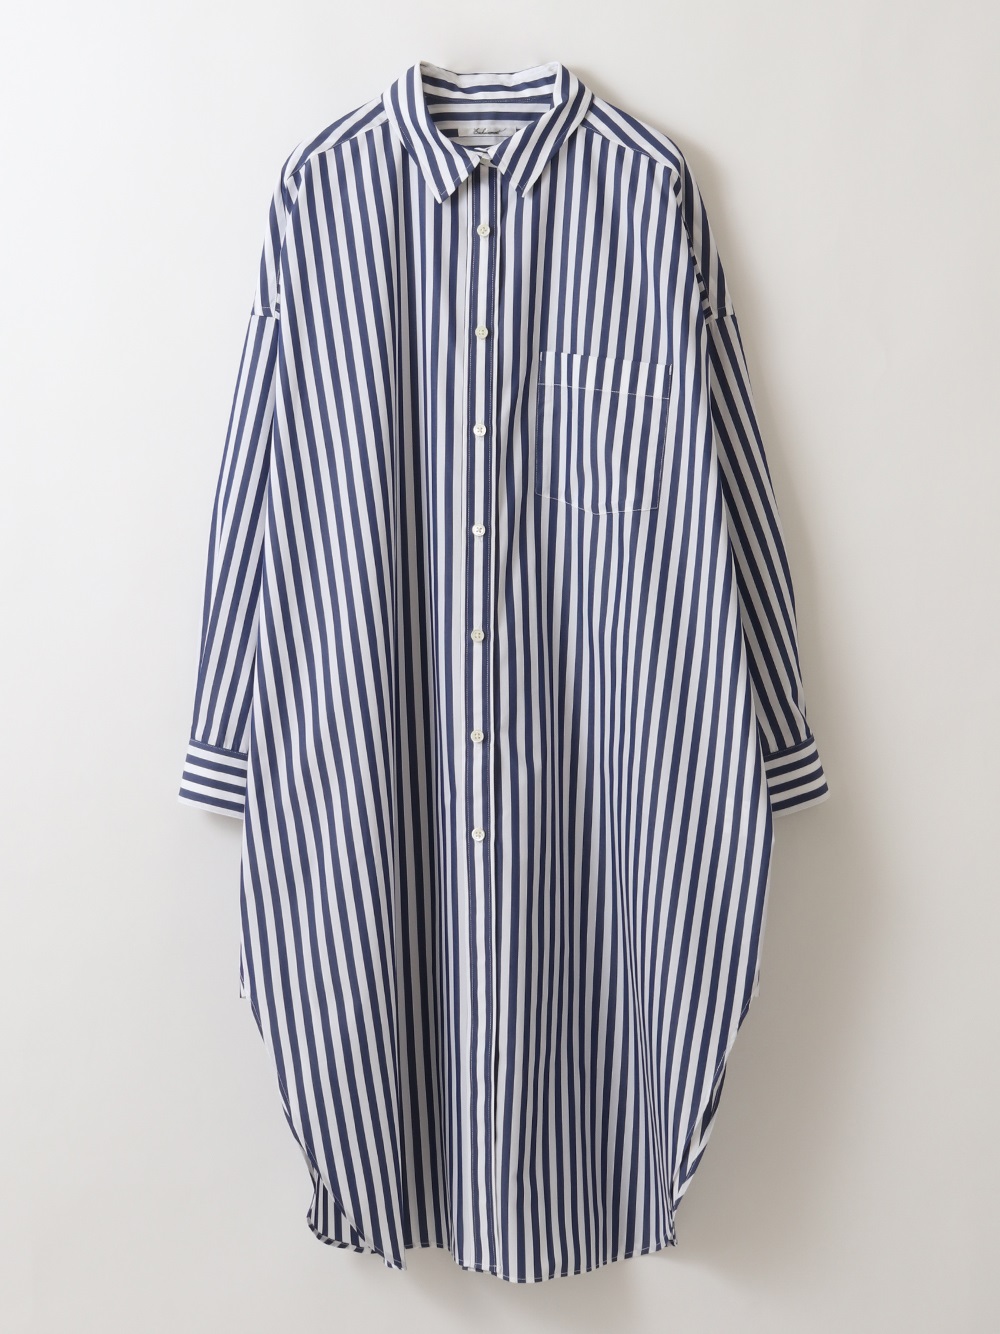 Basic long shirt(71ブルー-フリー)